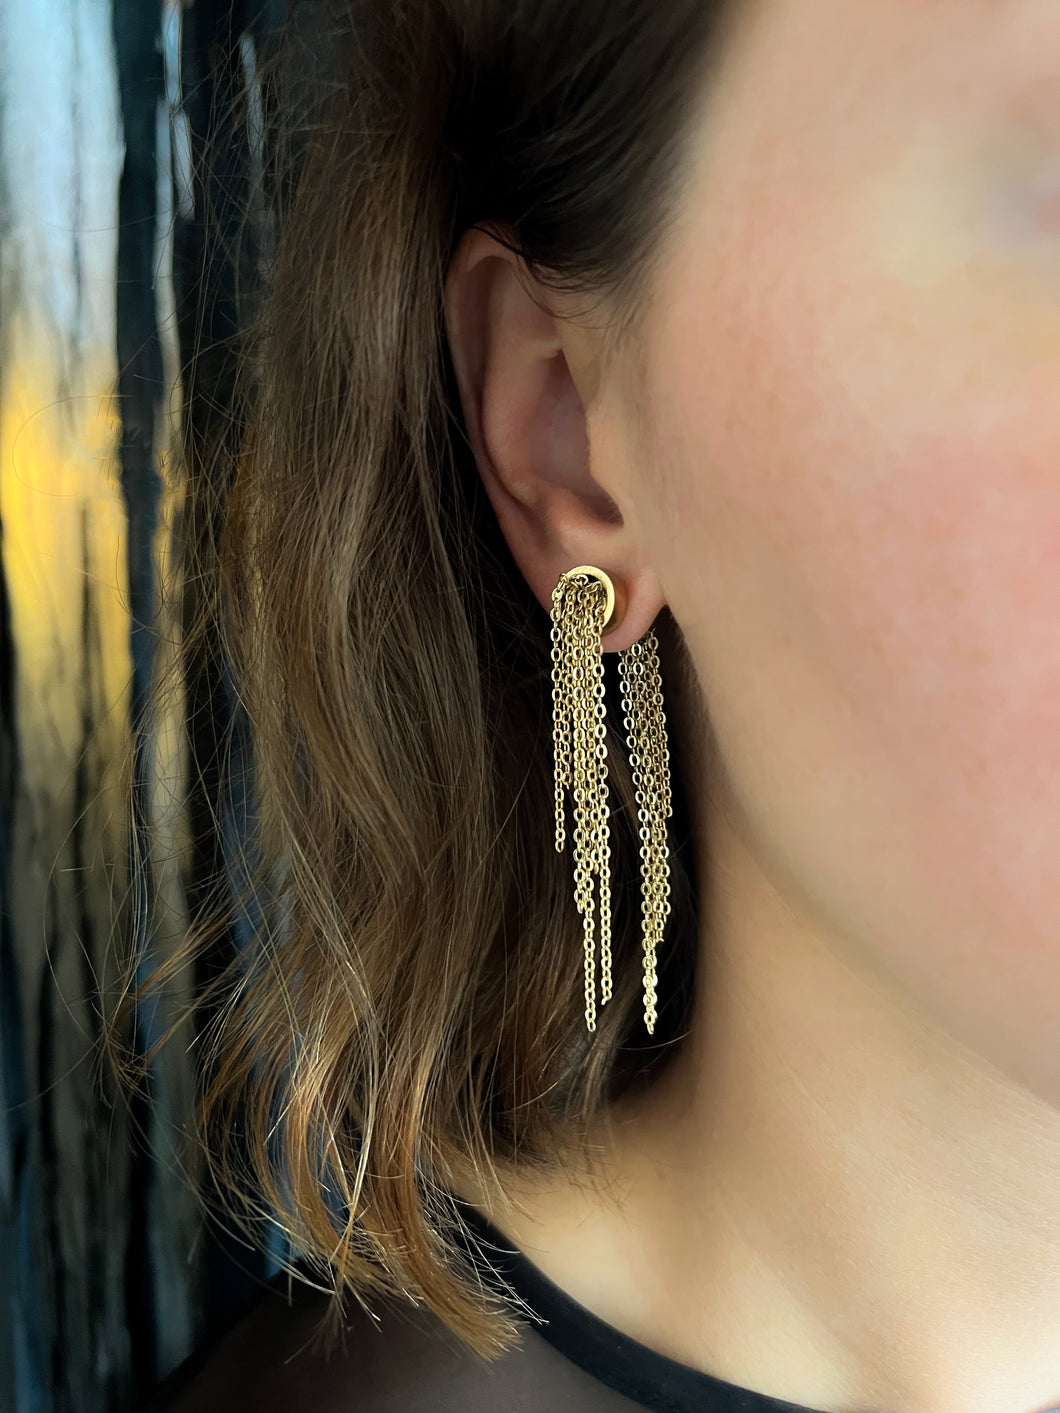 Bora Gold Earrings - 24k Gold Plated Tassel Double Sided Earrings